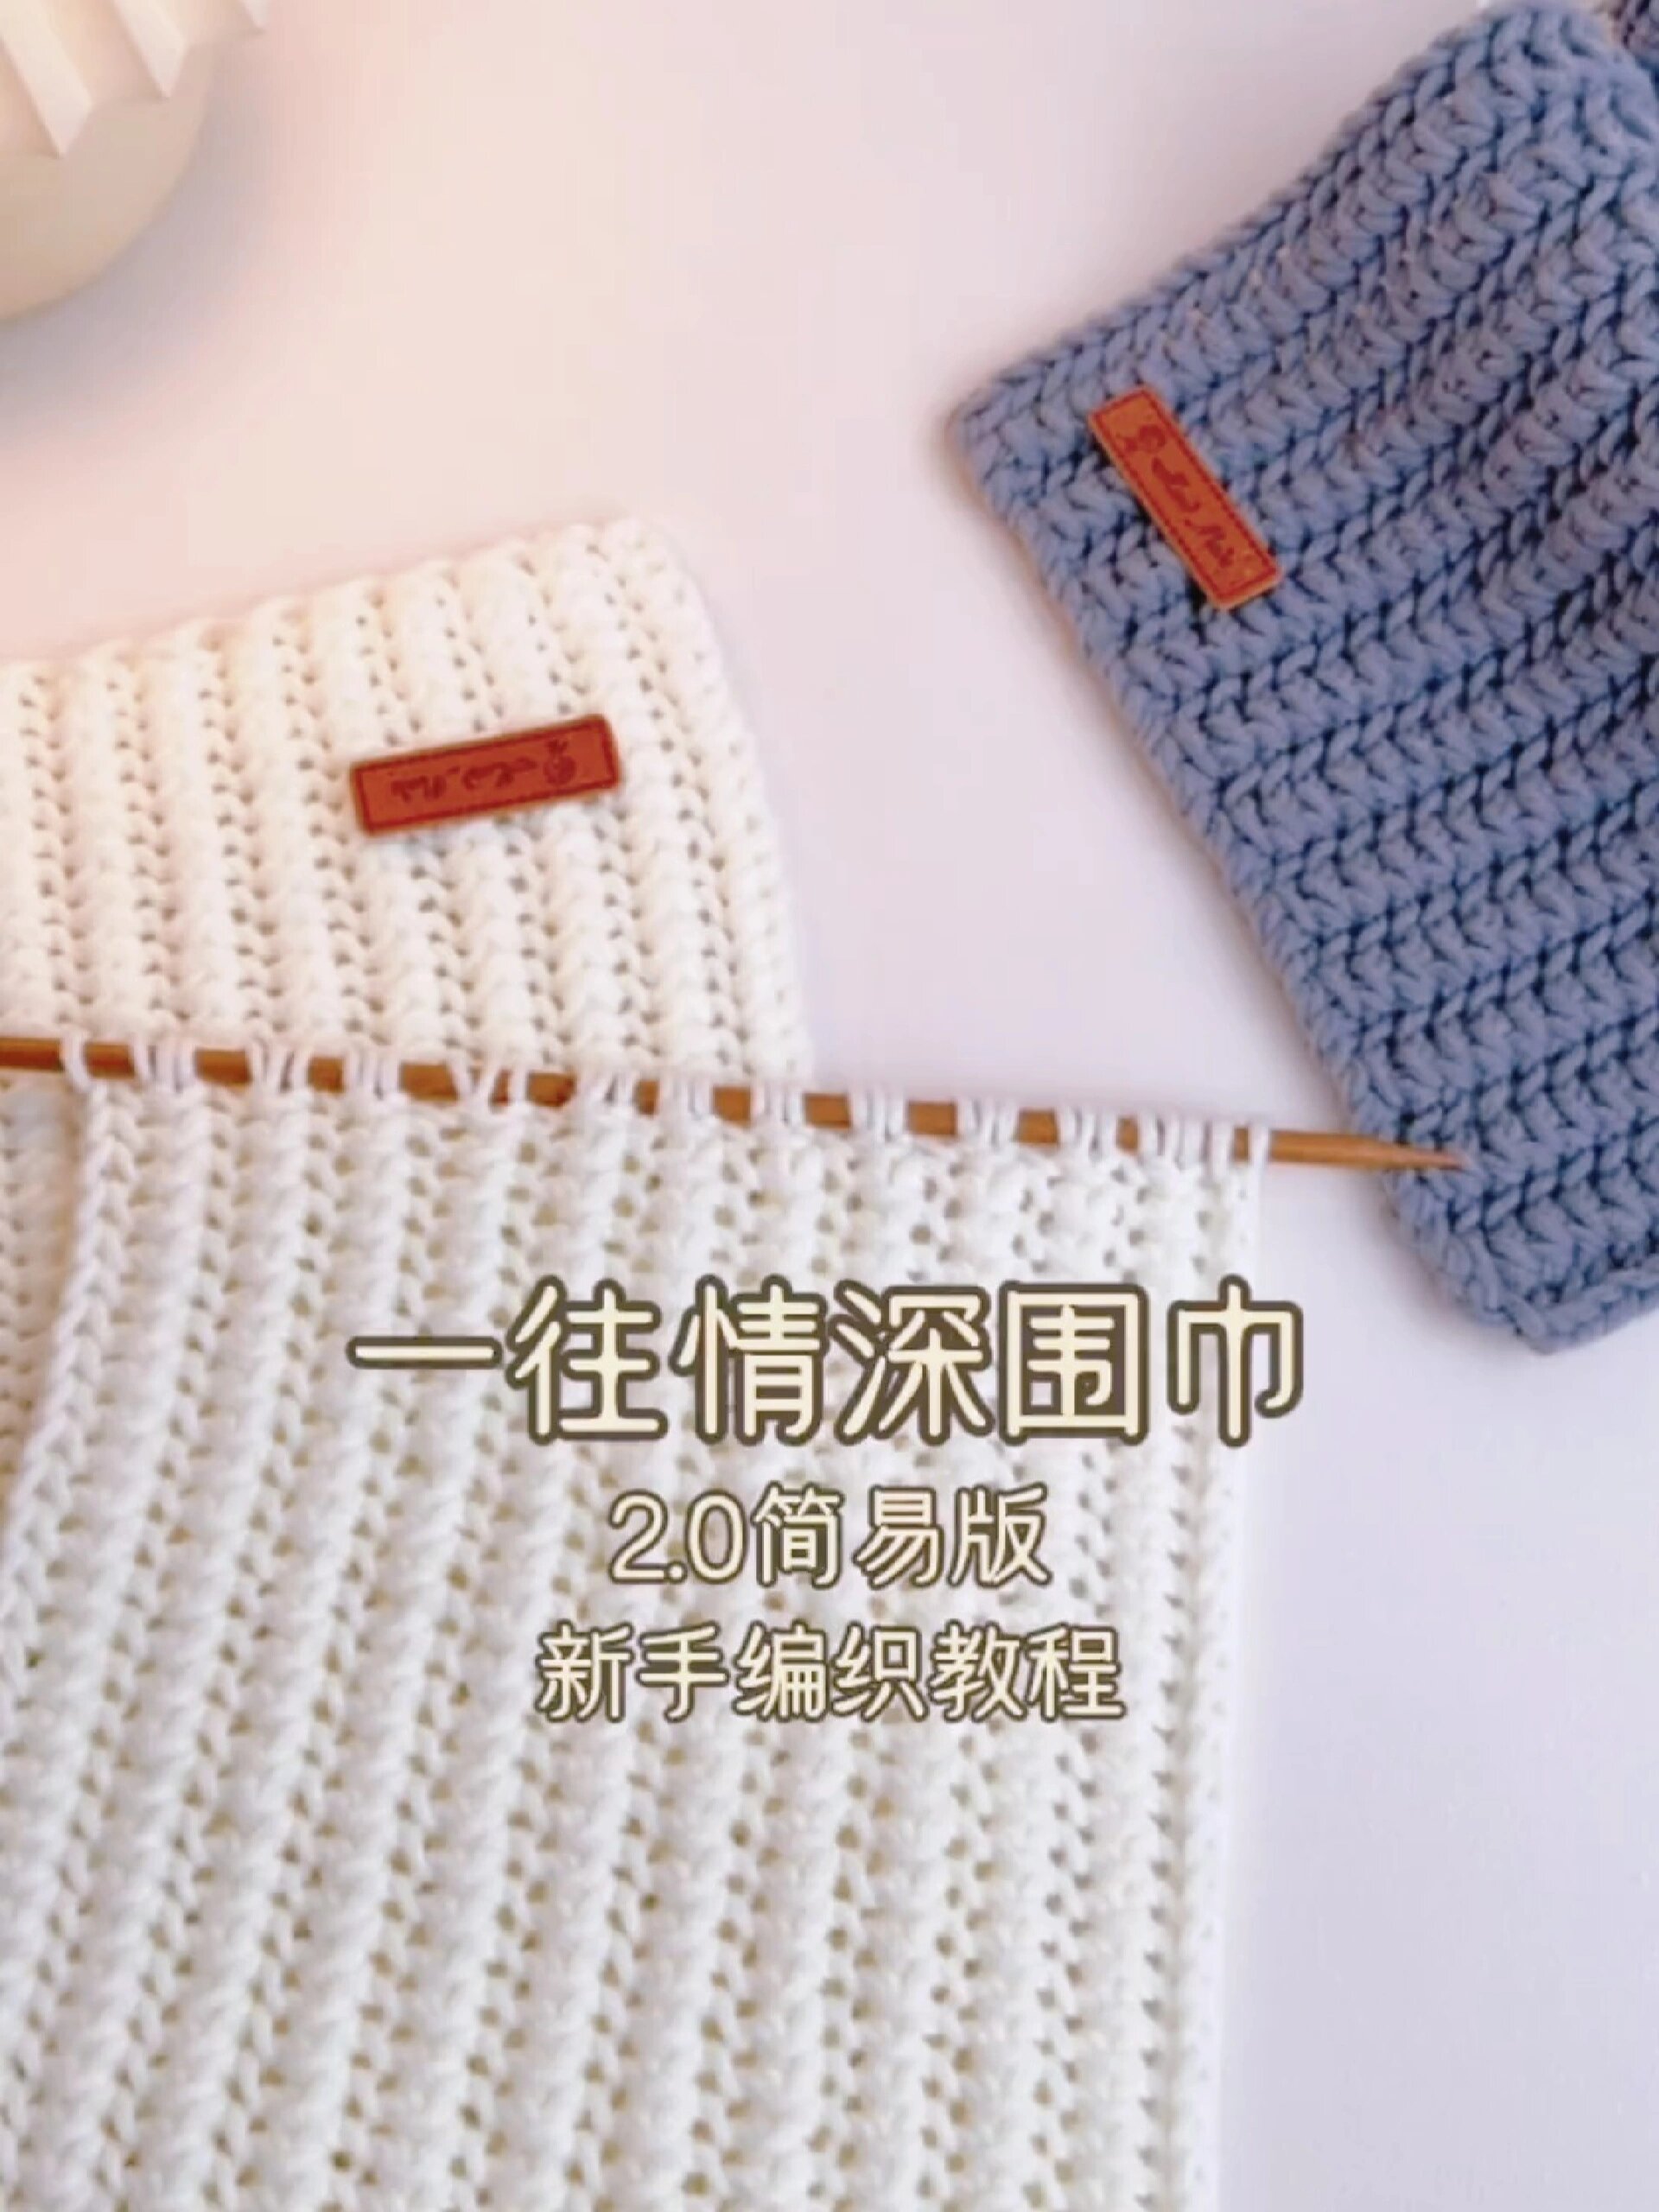 用手织围巾简单教程图片